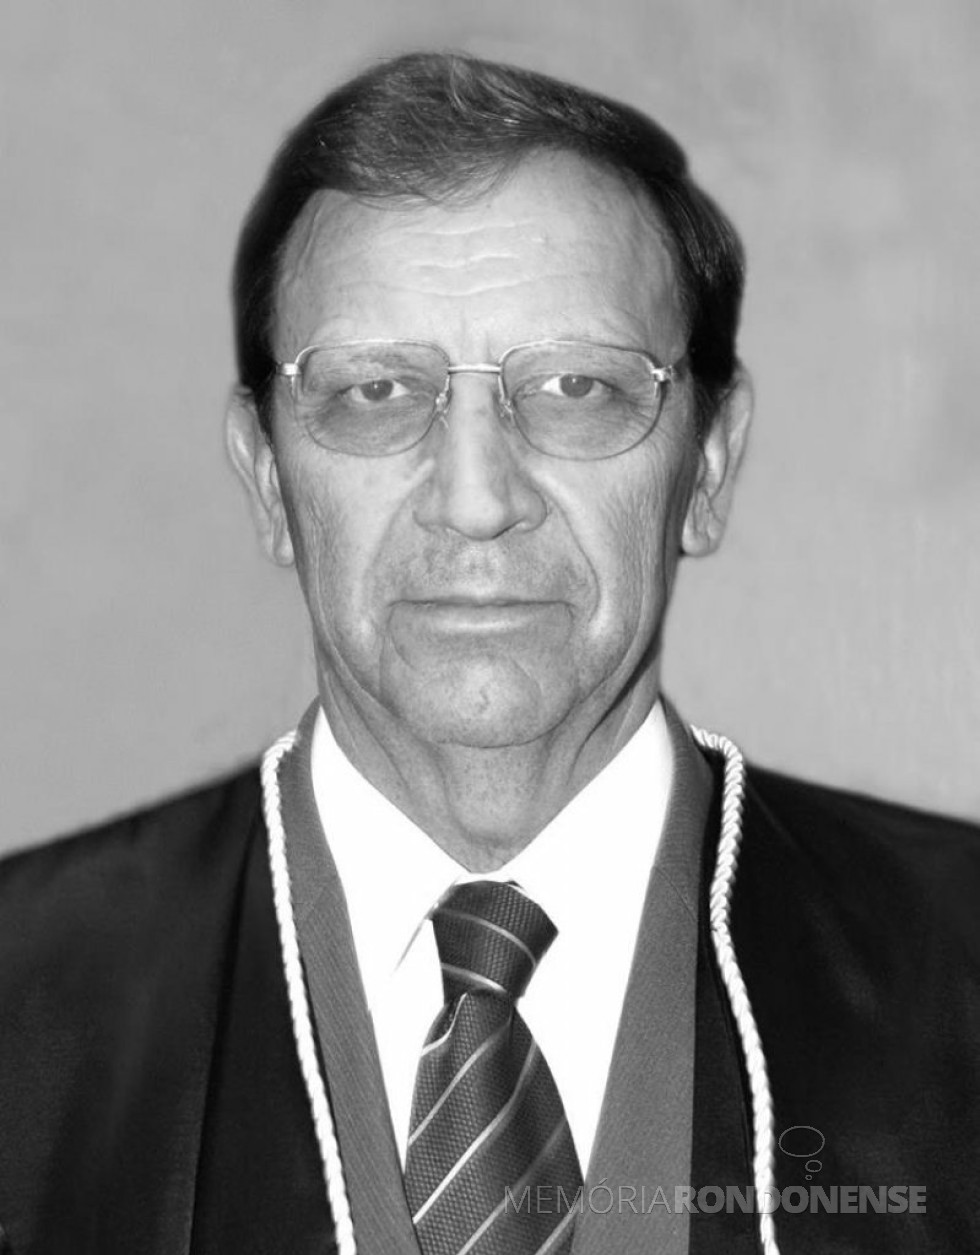 Juiz João Kopytowski, depois  desembargador da Tribunal de Justiça do Estado do Paraná.
Imagem: Acervo TJ-PR - FOTO 3 - 